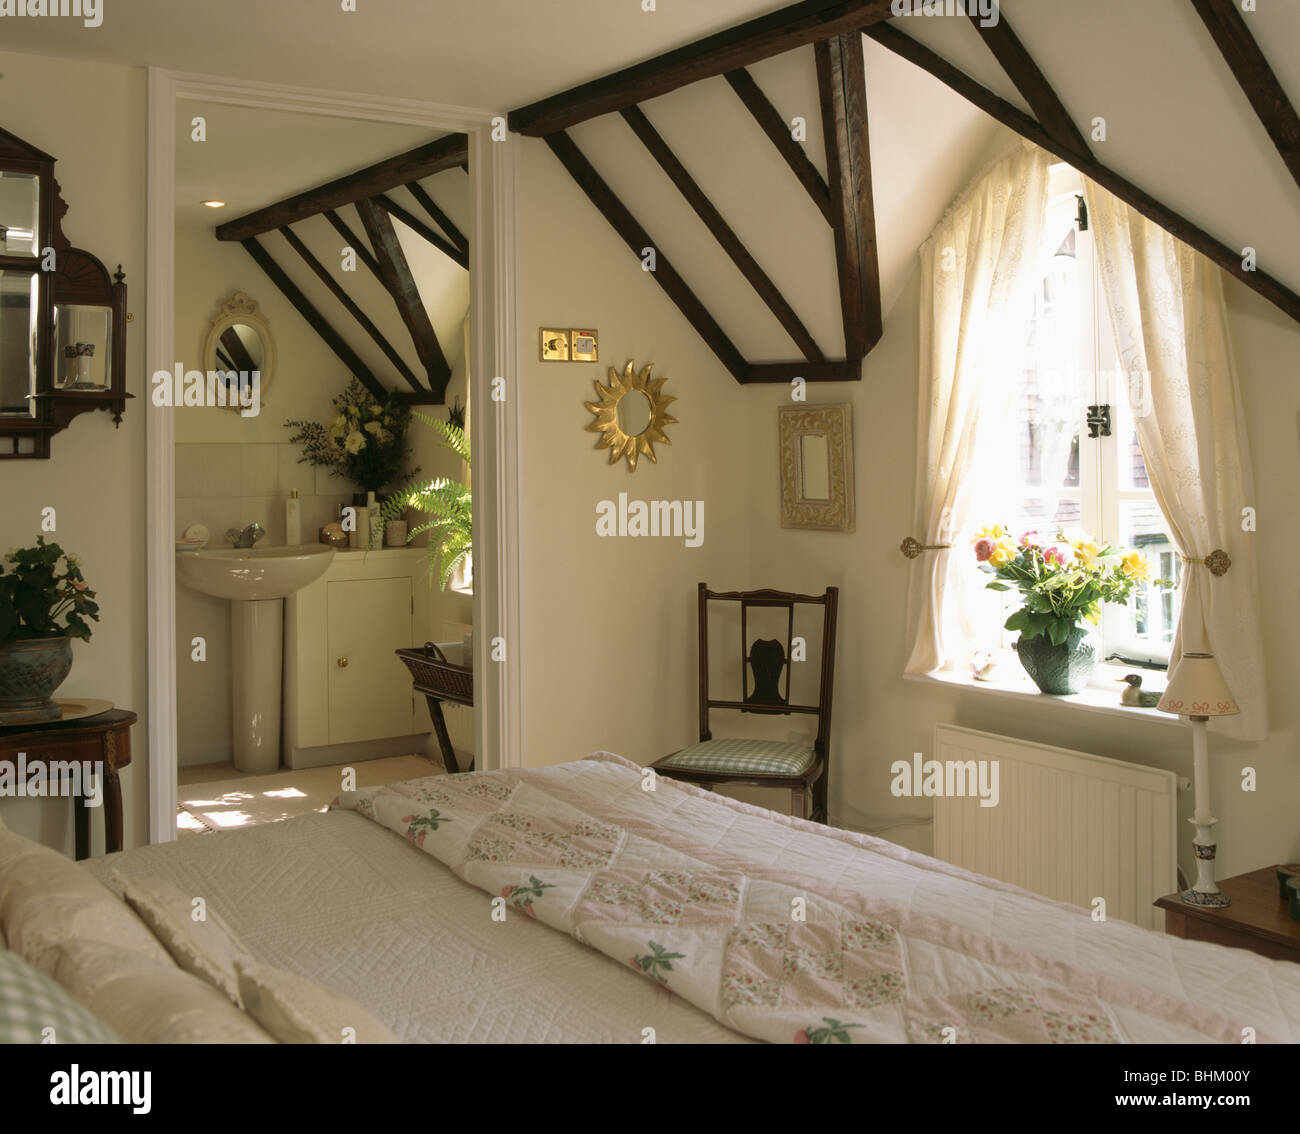 Cortinas blancas encima de una cama individual con ropa de cama blanca y  cojines en dormitorio tradicional con imágenes grandes y telas ciegos  Fotografía de stock - Alamy